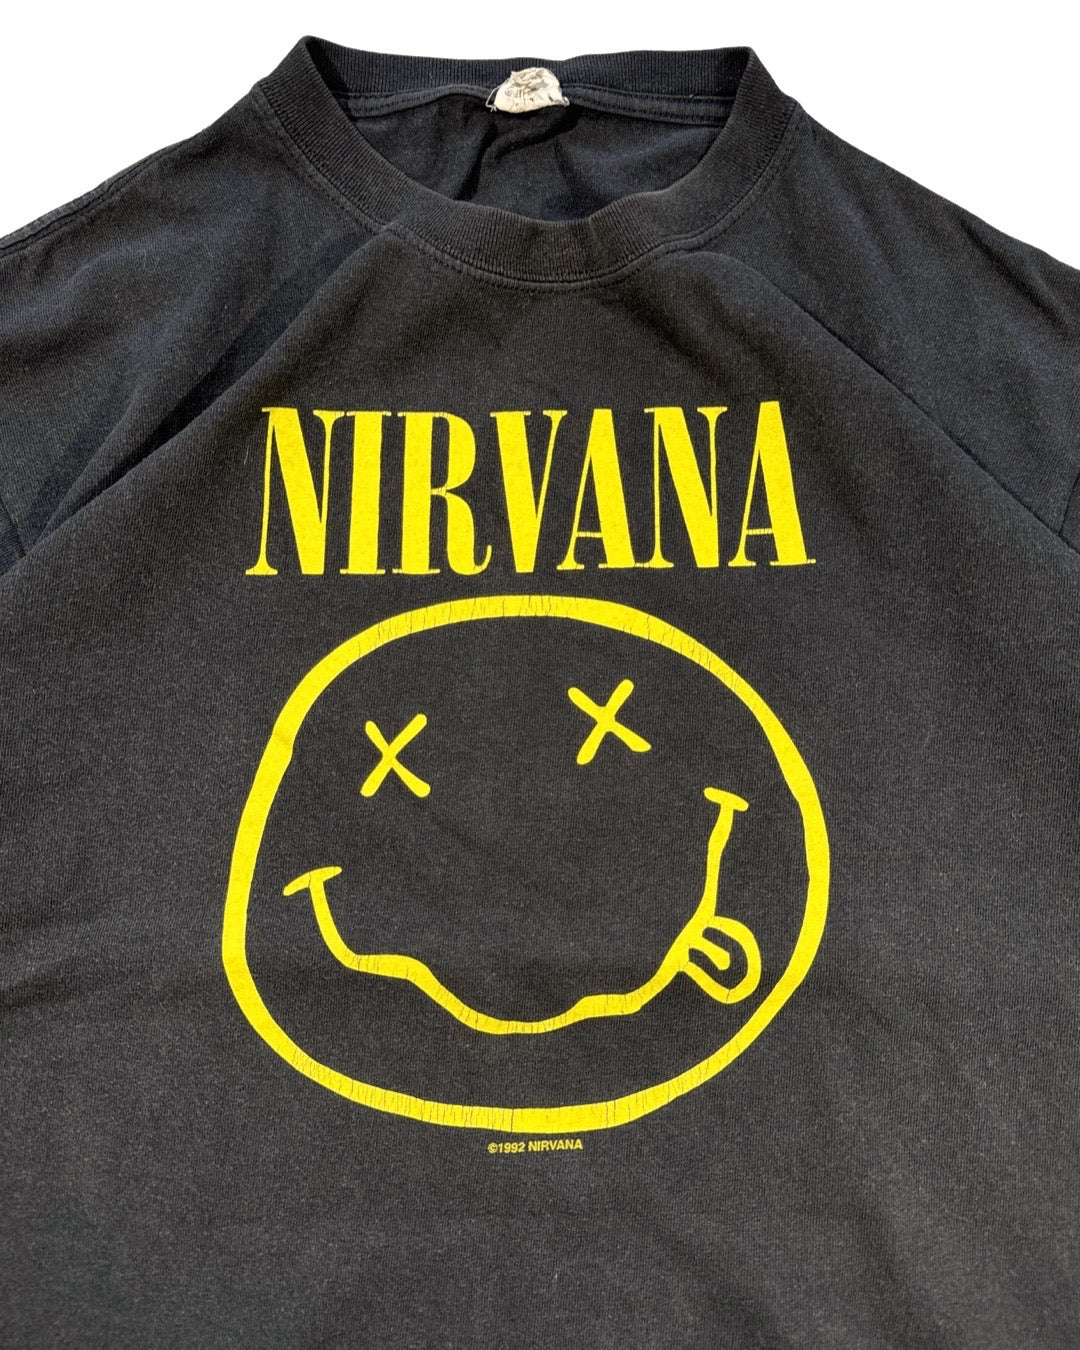 Vintage Nirvana 1992 Tee - M